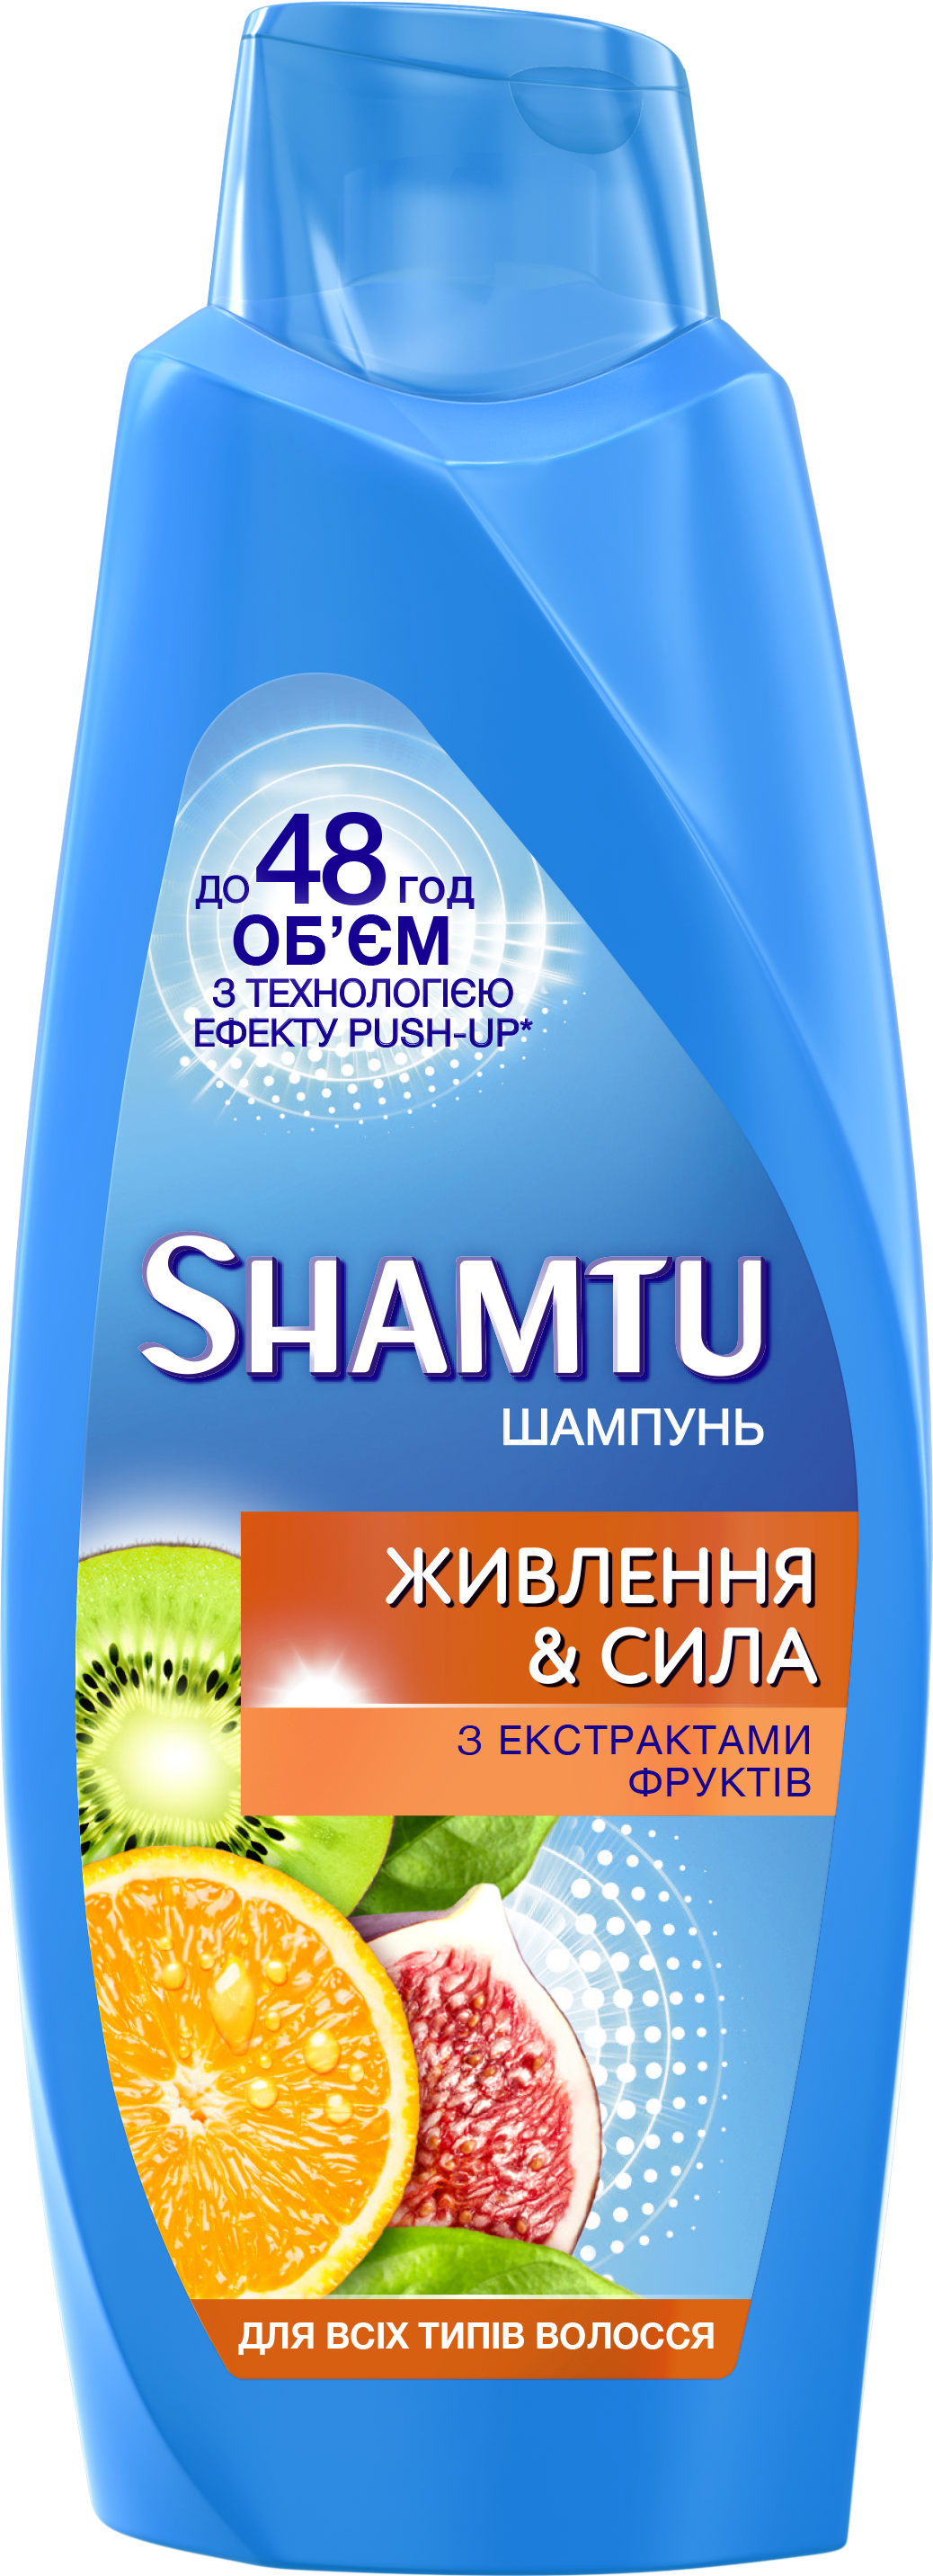 Шампунь Shamtu Питание и Сила, c экстрактами фруктов, для всех типов волос, 600 мл - фото 1